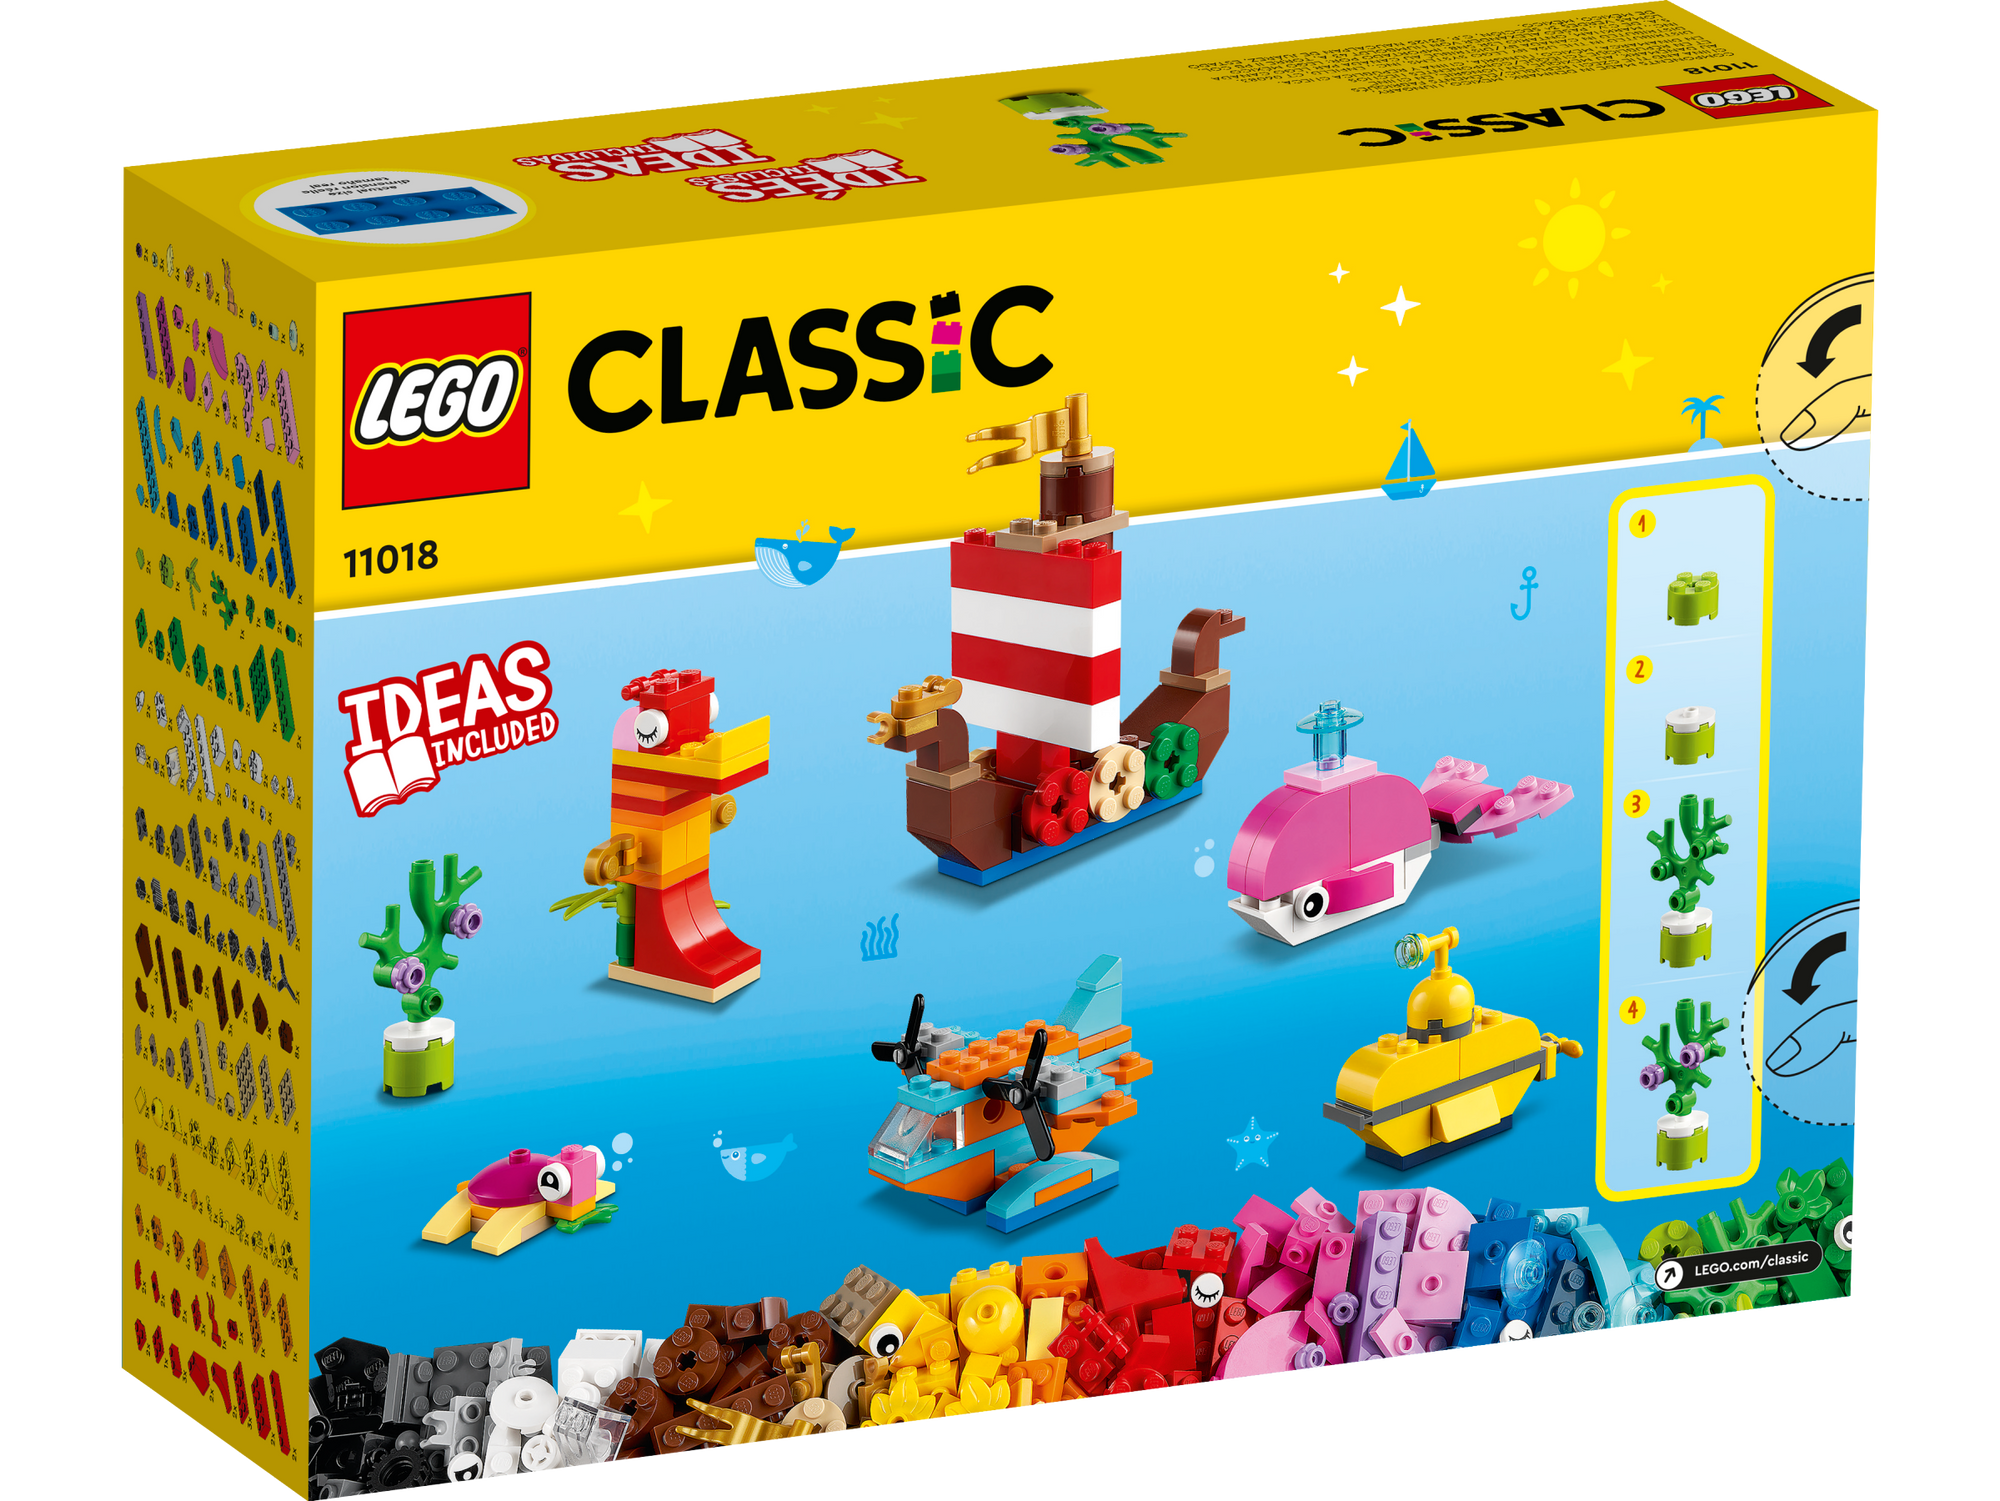 LEGO 11018 CLASSIC CREATIVE OCEAN FUN